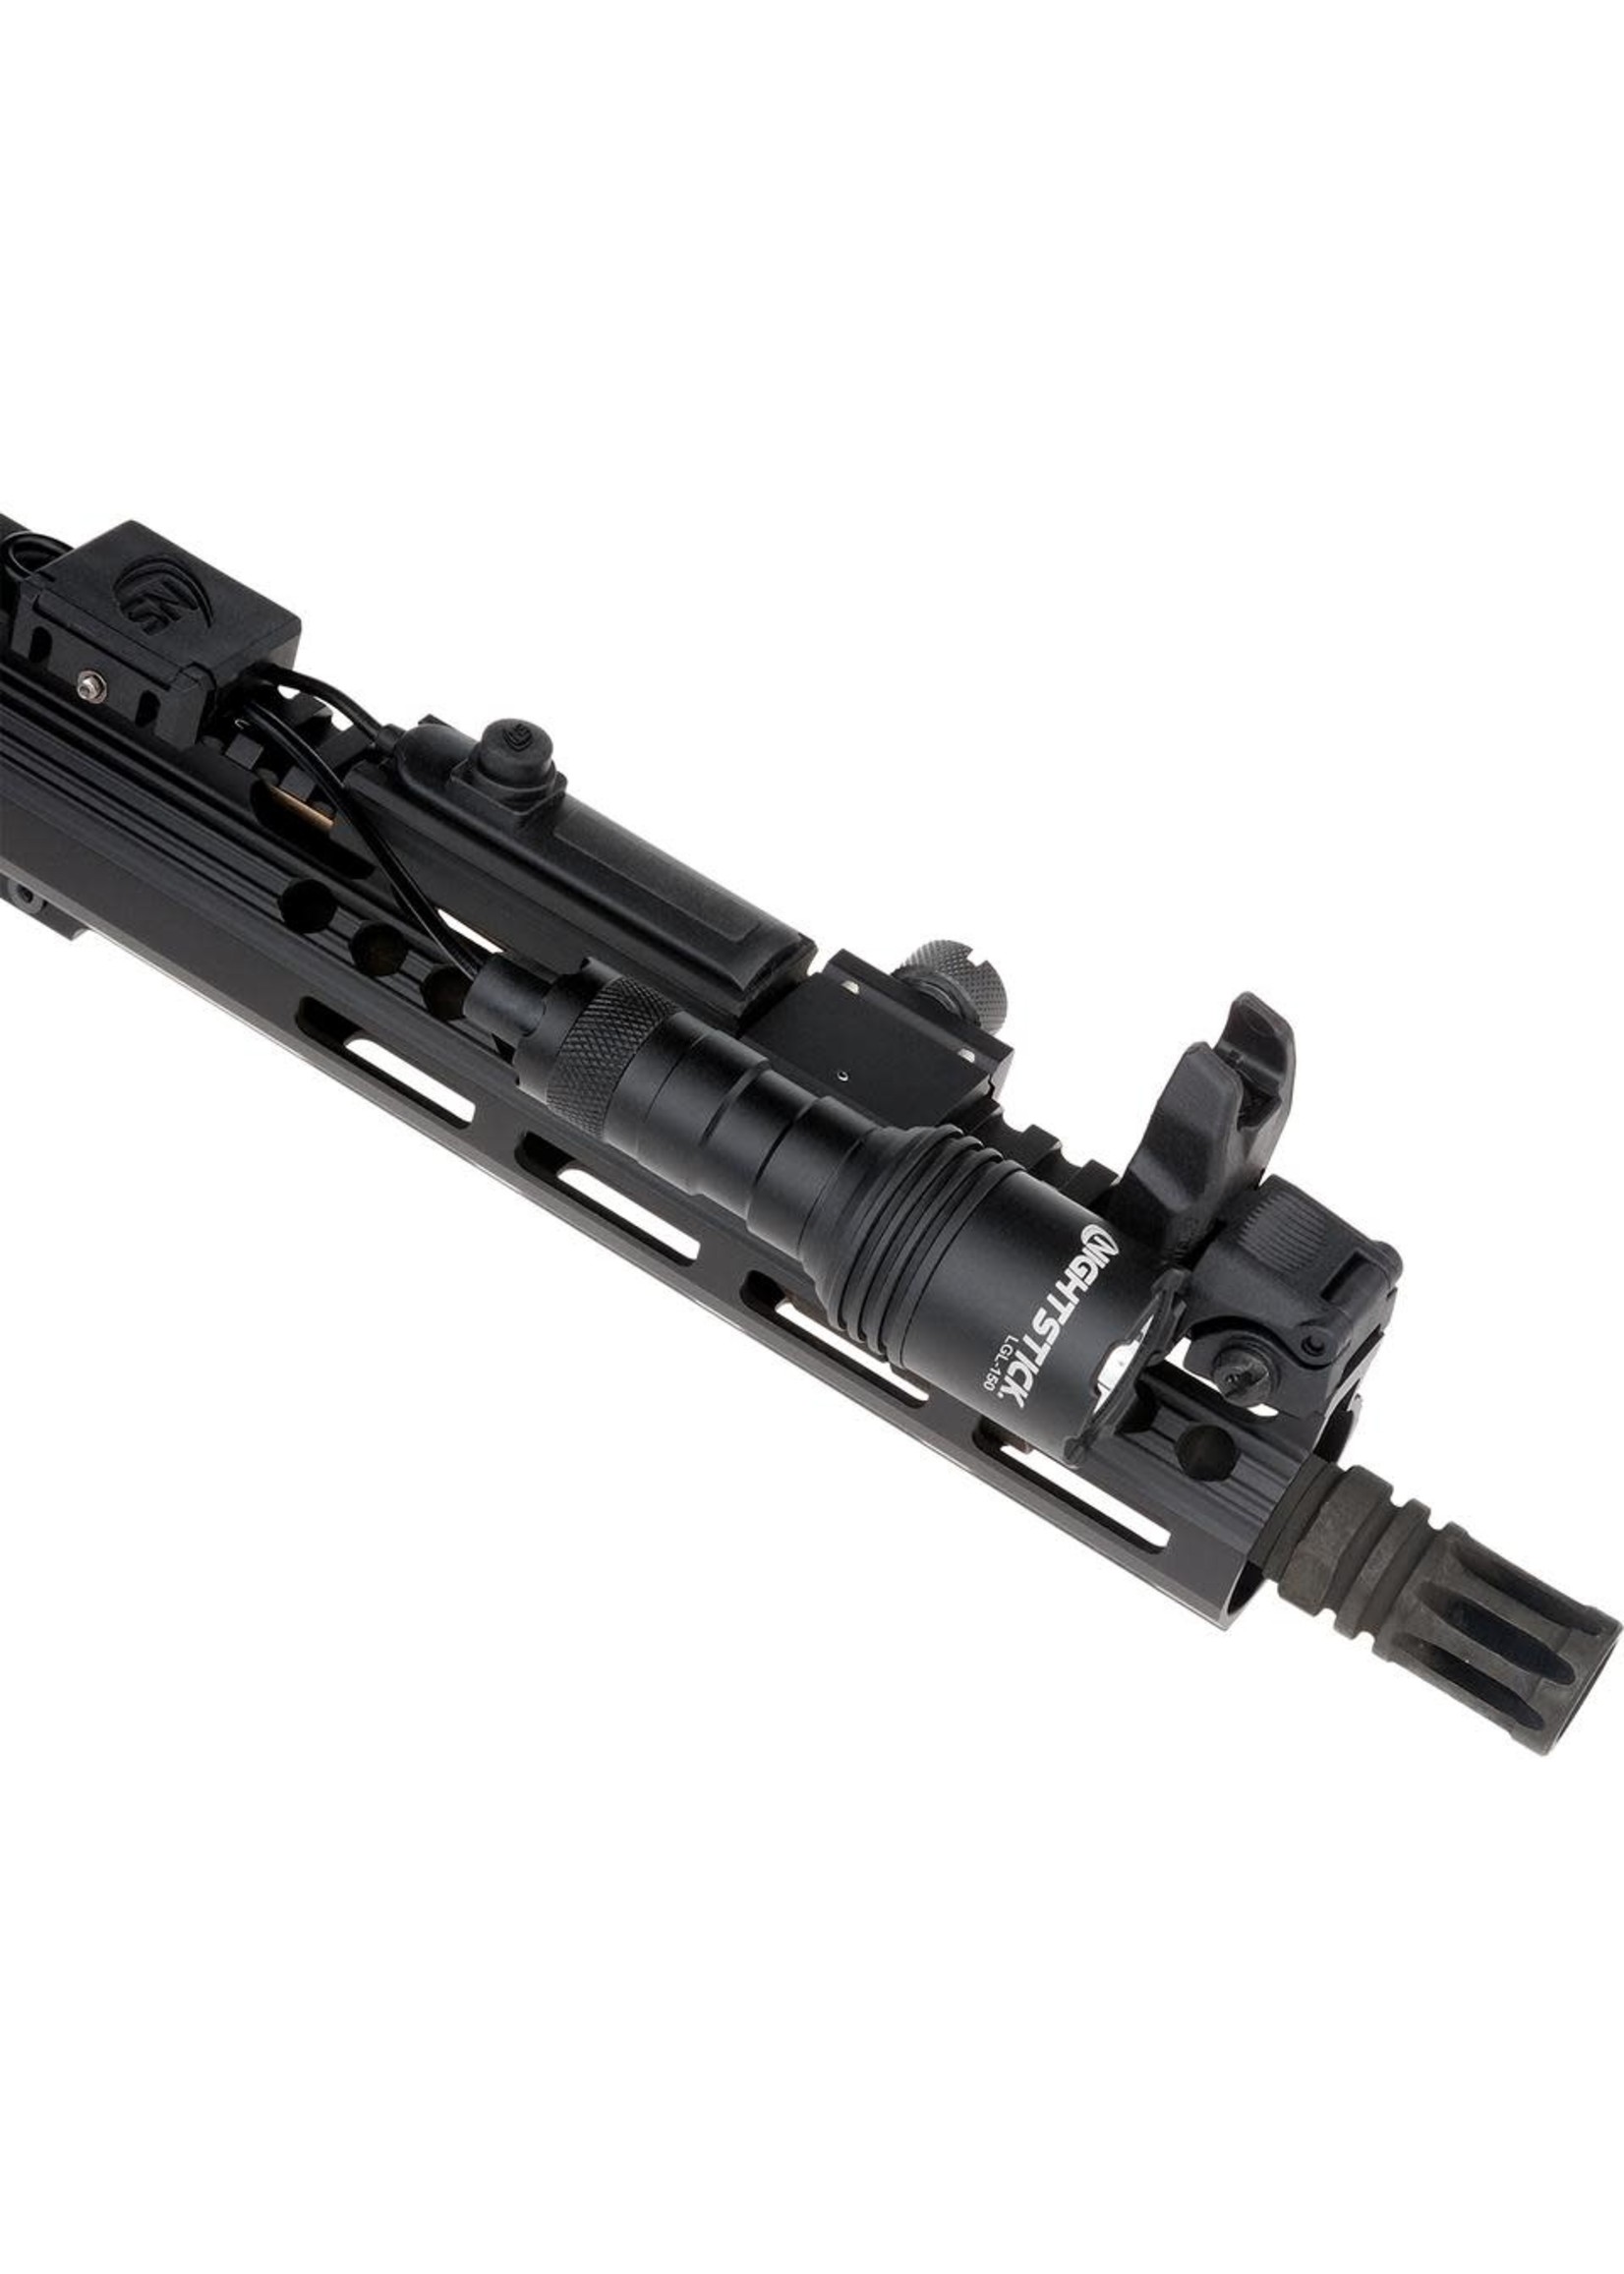 LONG GUN LIGHT KIT W/RPS - 1 CR123 - BLACK